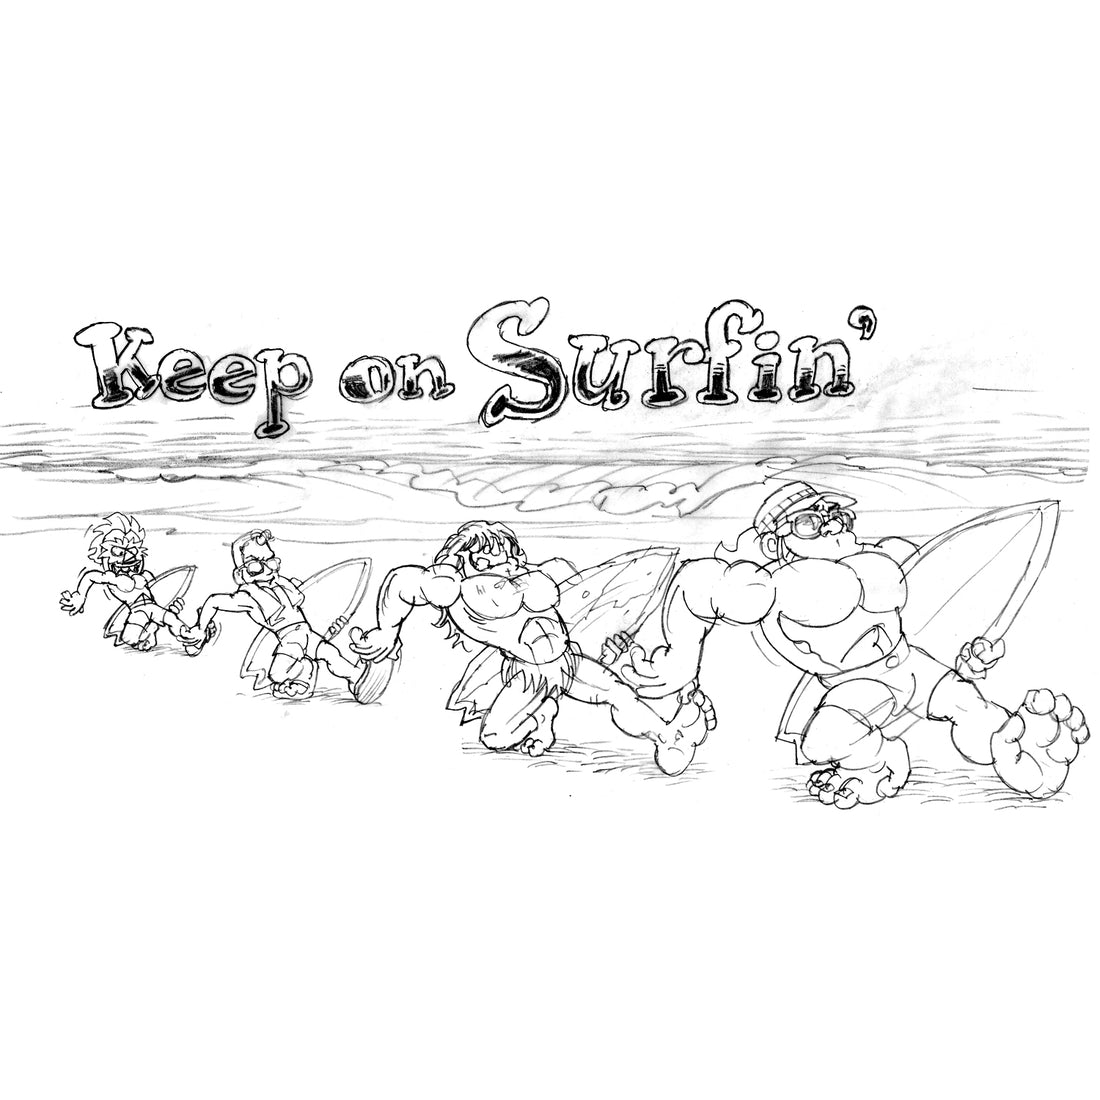 STEVE NAZAR'S DAILY DOODLE 6.14.18 - "Keep On Surfin'"